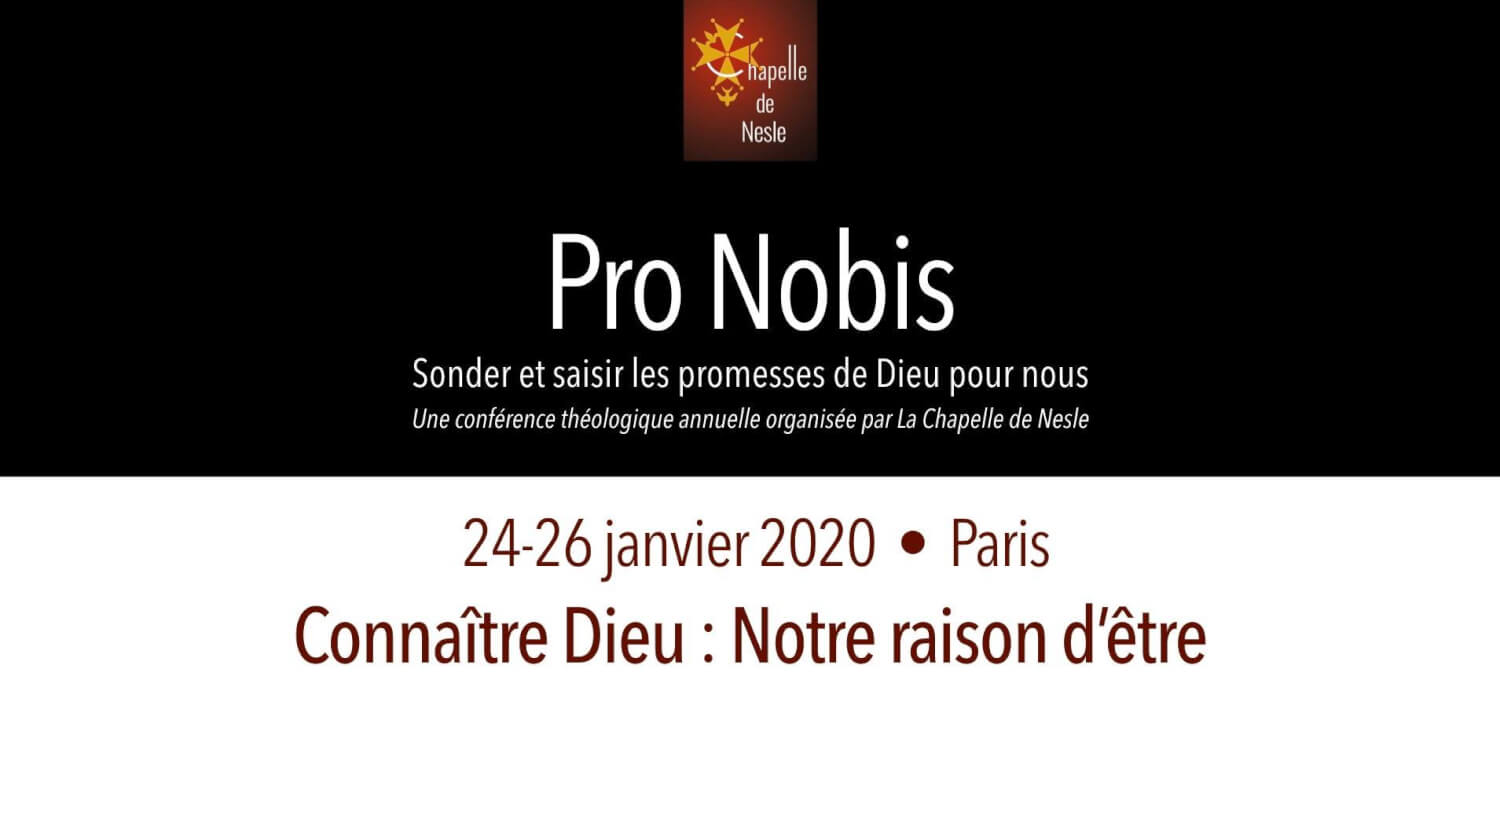 Pro Nobis 2020 - Connaître Dieu